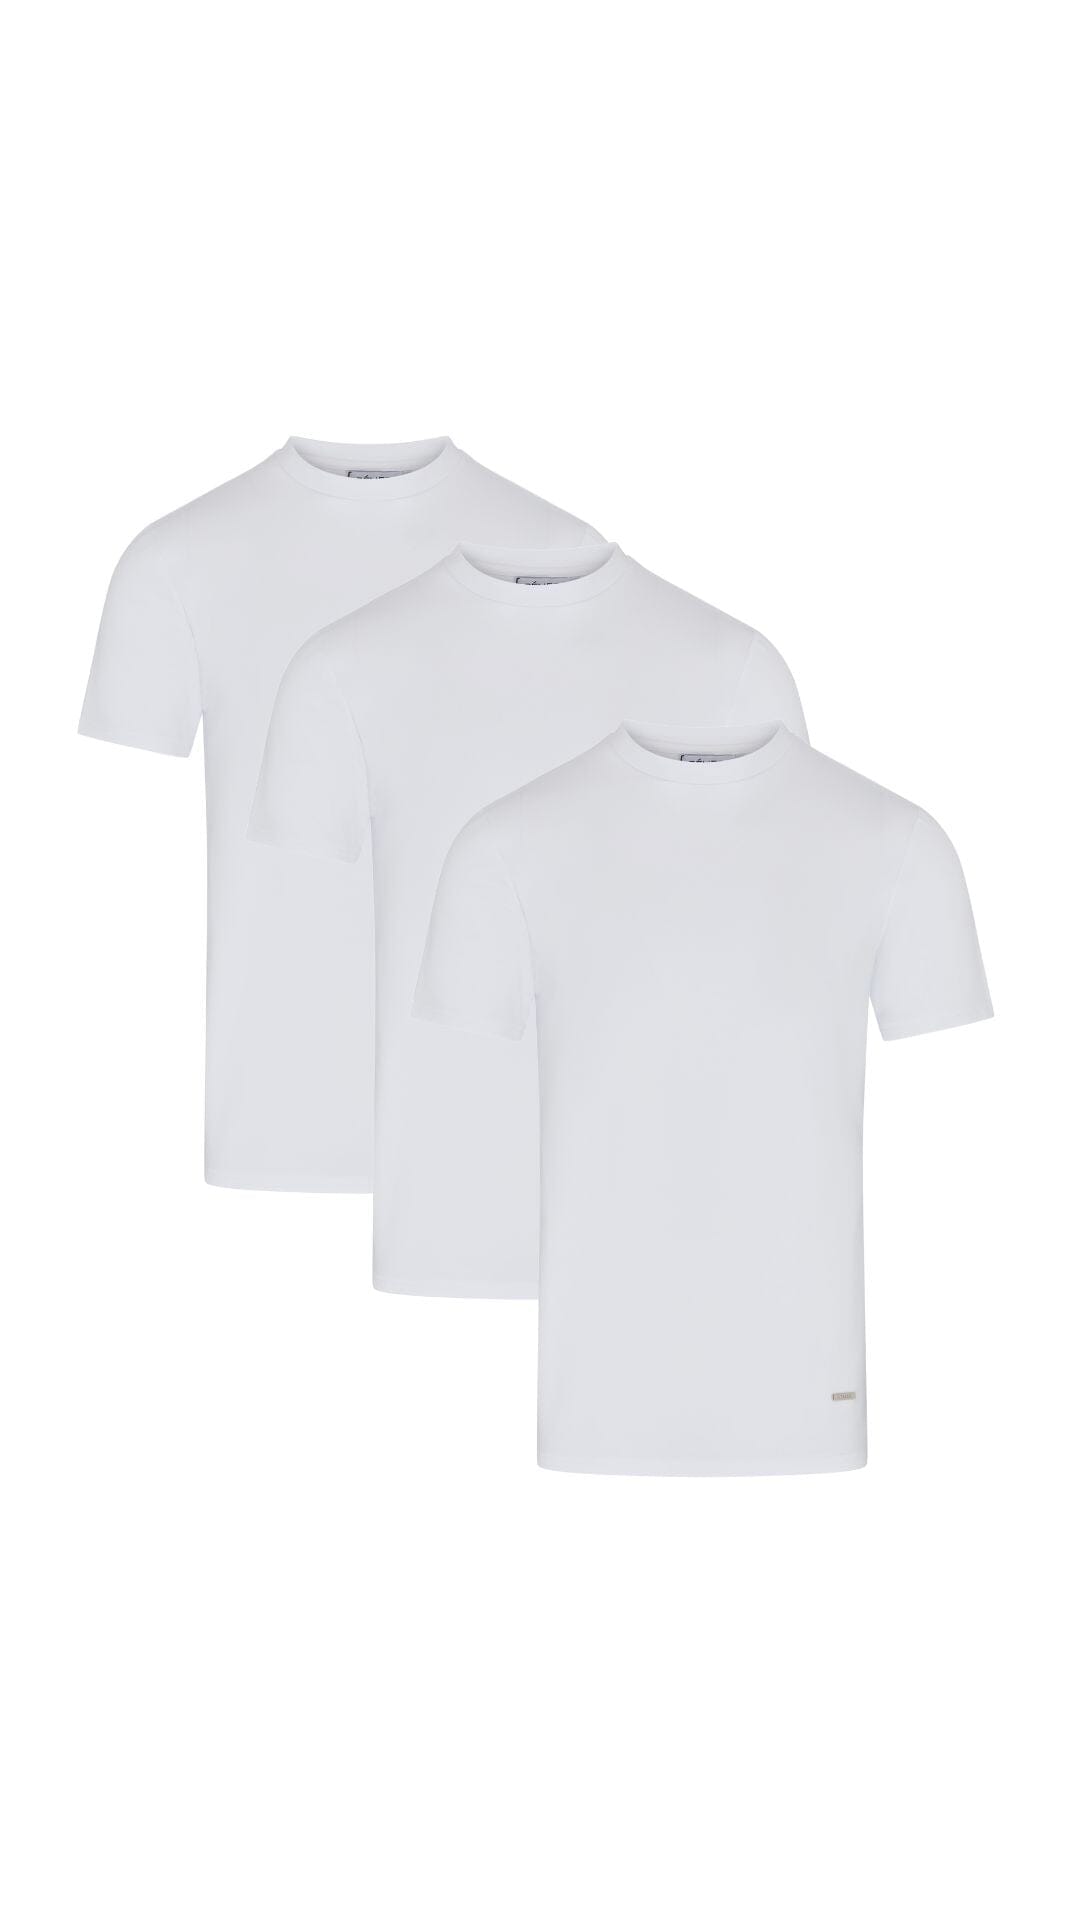 3 Pack Premium White T-Shirt